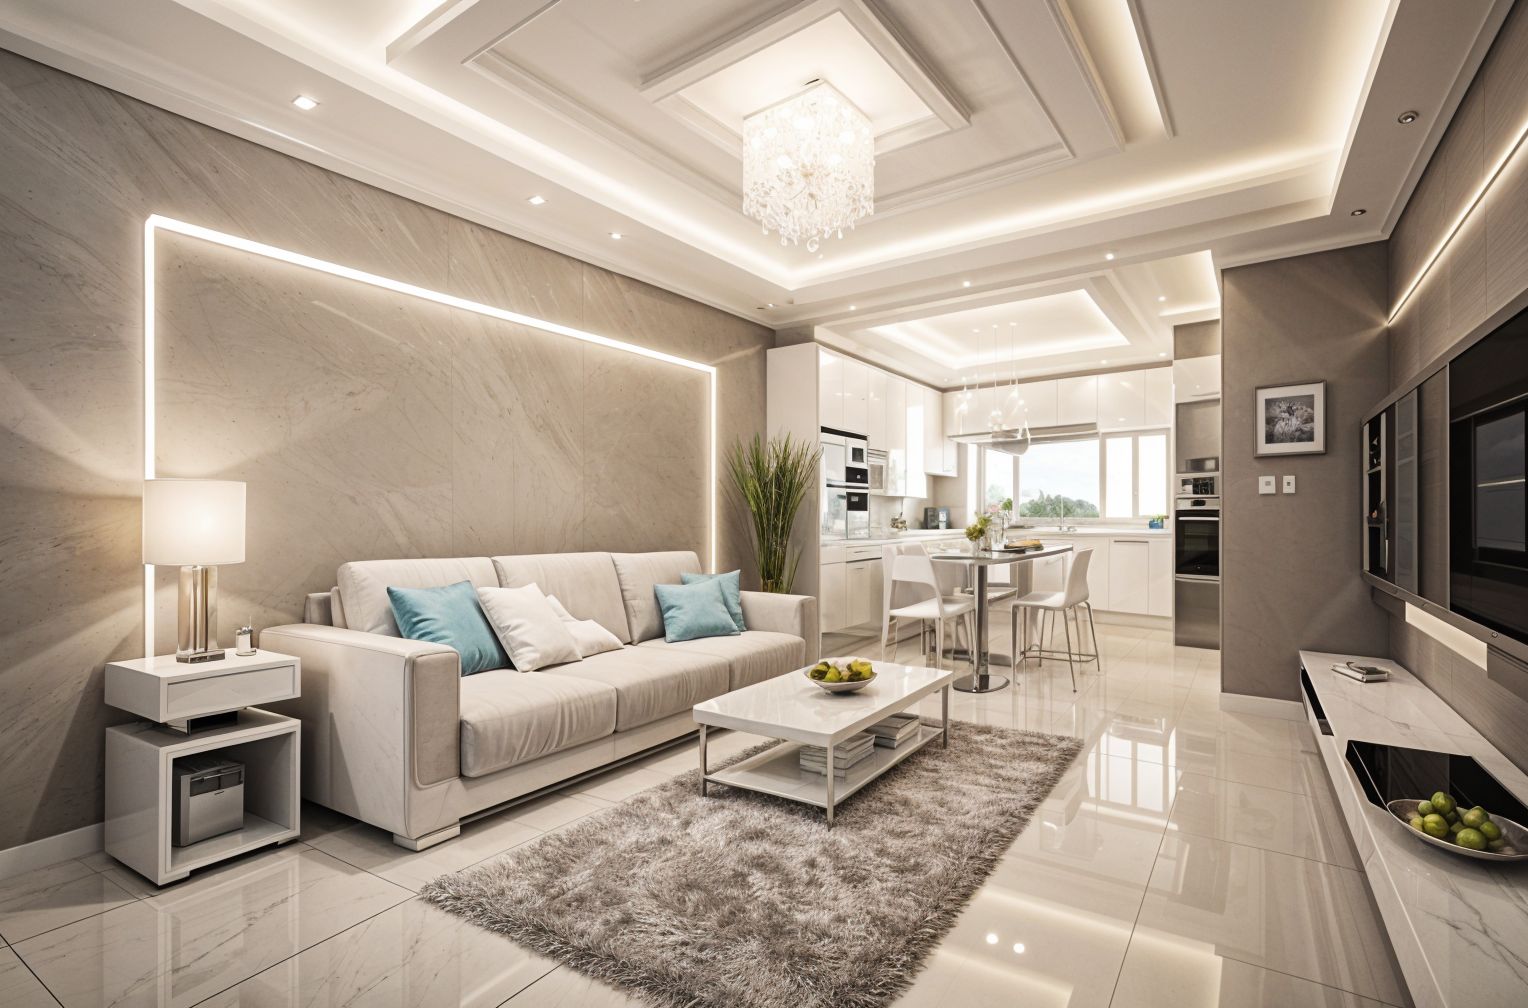 Futuristic Living Room